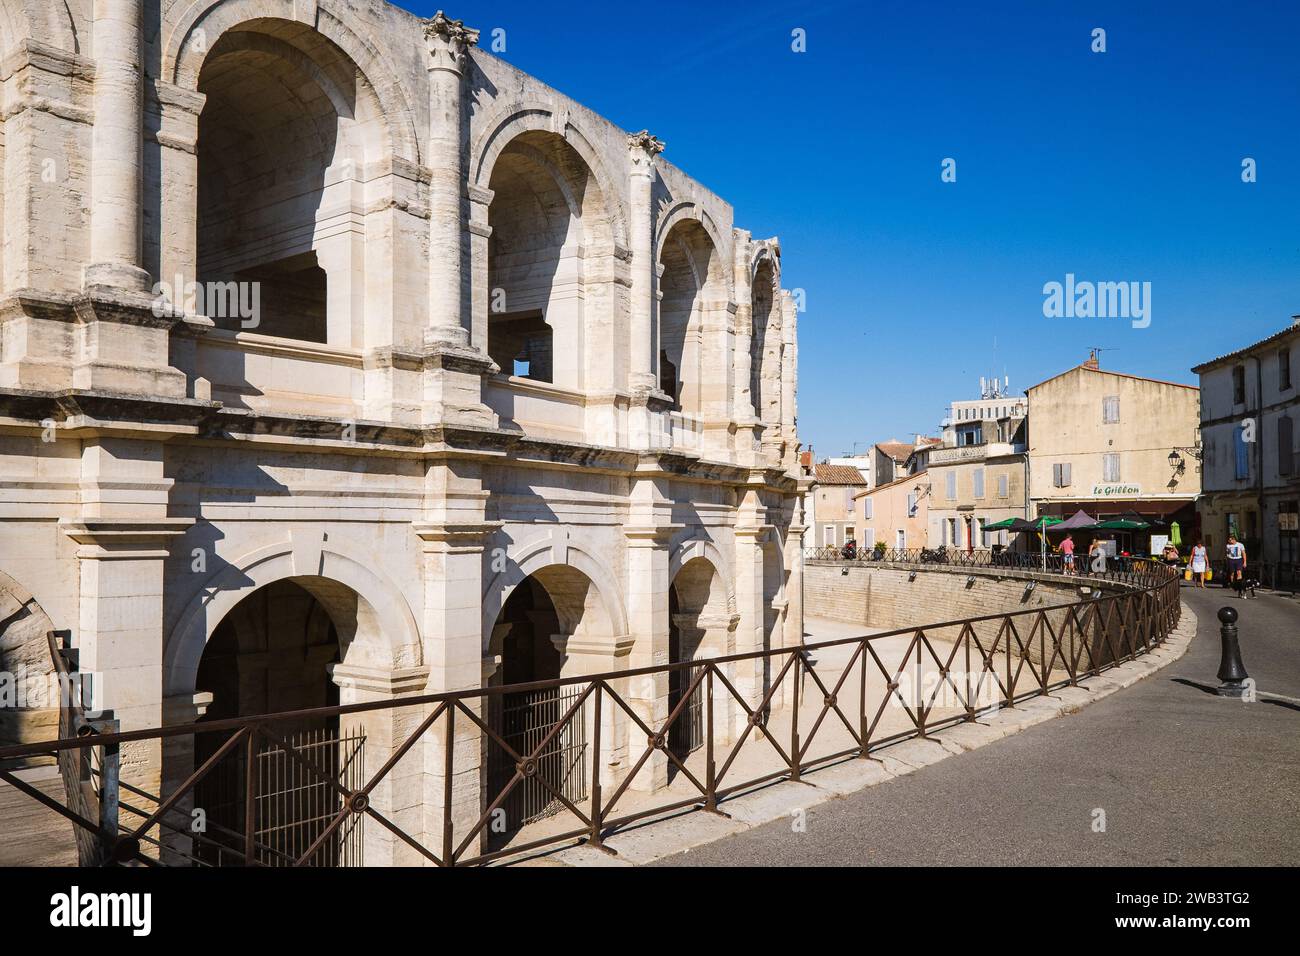 L'arena di Arles, costruita nel i secolo d.C., inondata di luce solare in un giorno d'estate. Foto Stock